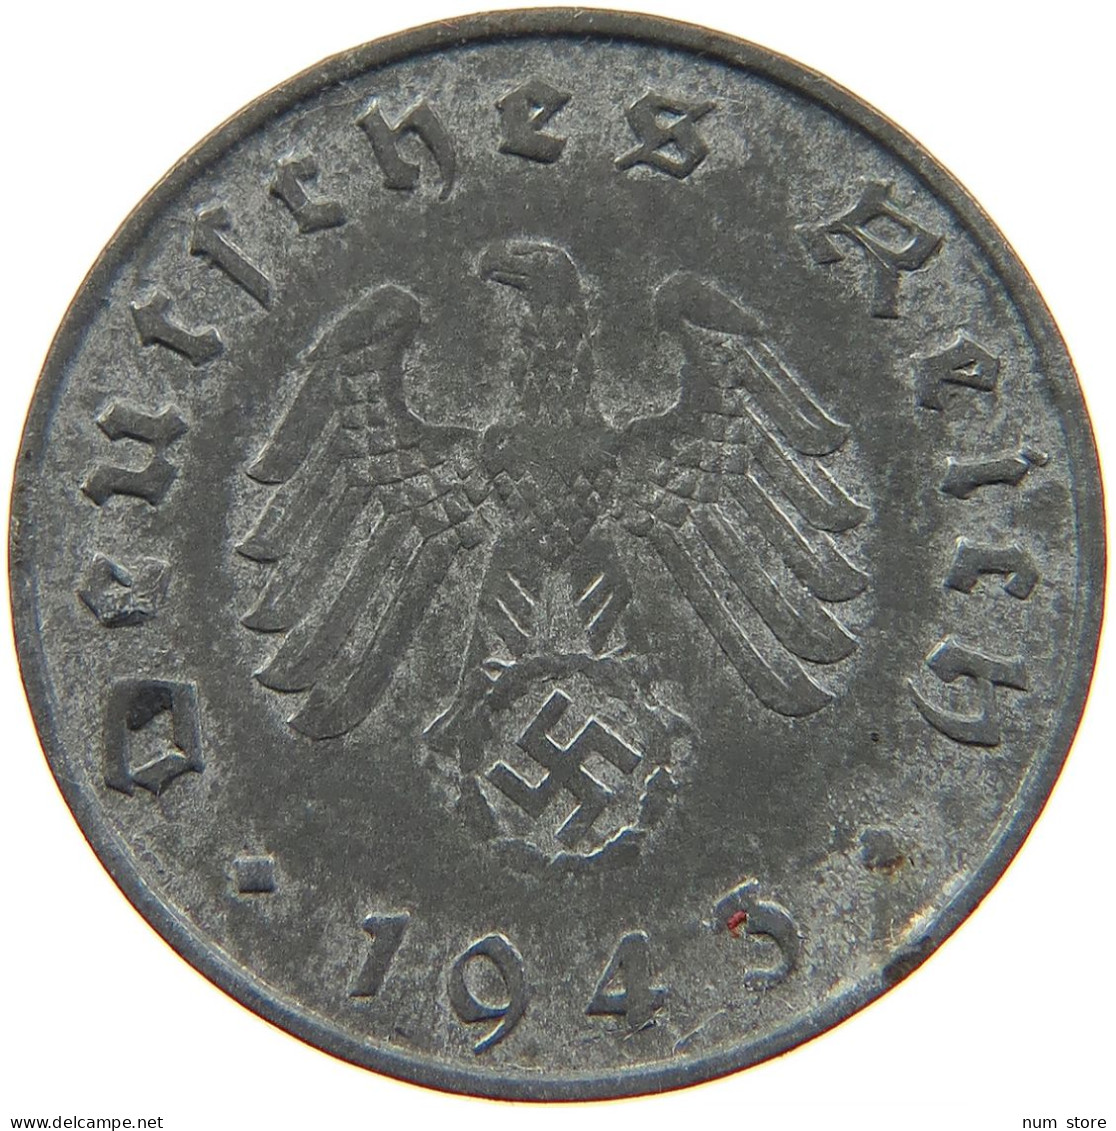 GERMANY 10 REICHSPFENNIG 1943 B #s095 0039 - 10 Reichspfennig